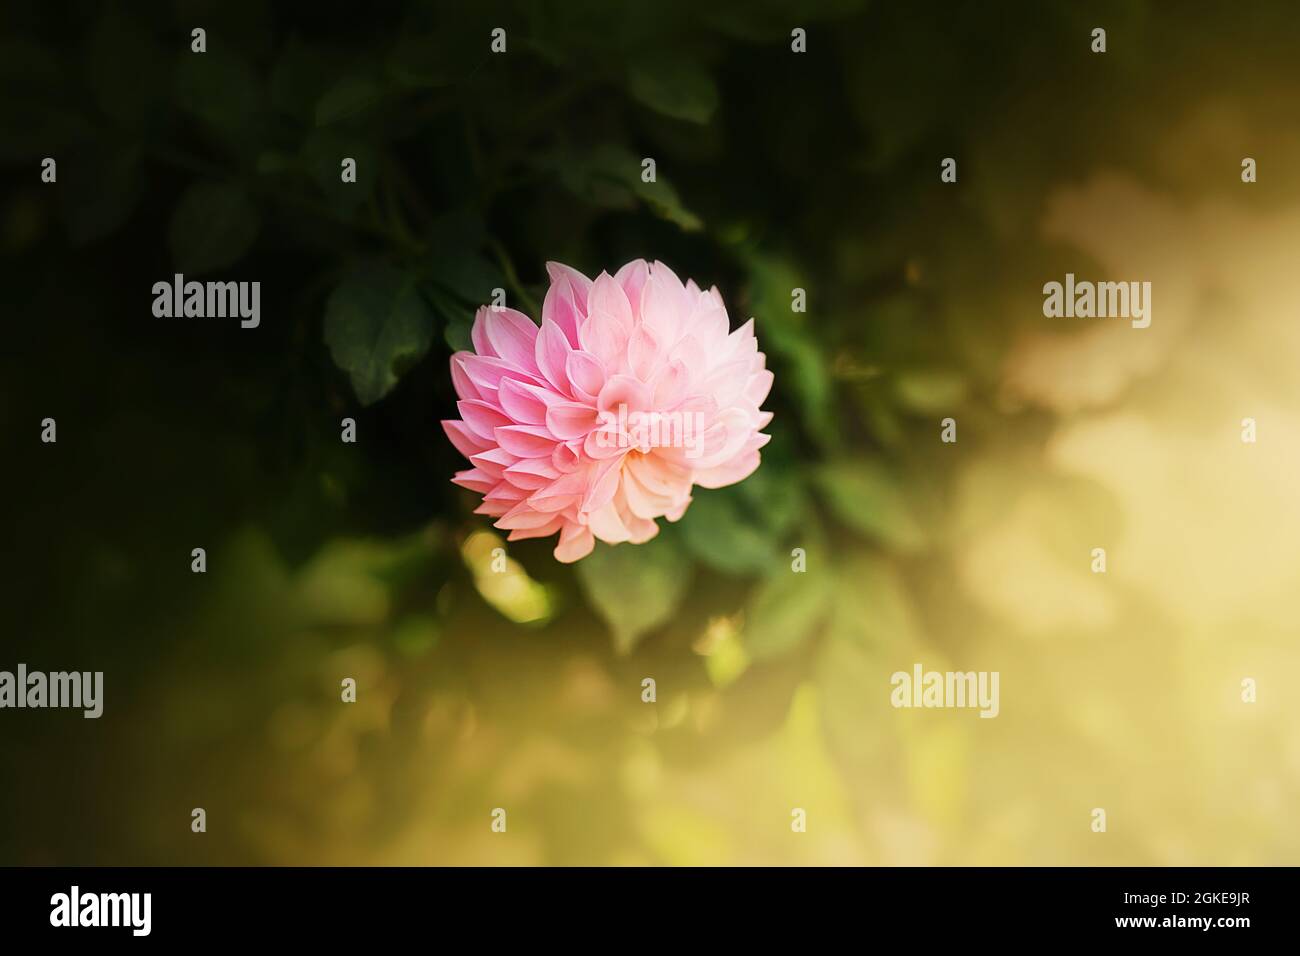 Die Blume eines schönen rosa Asters blüht zwischen dunkelgrünen Blättern, die an einem Sommertag von warmem Sonnenlicht beleuchtet werden. Natur. Stockfoto